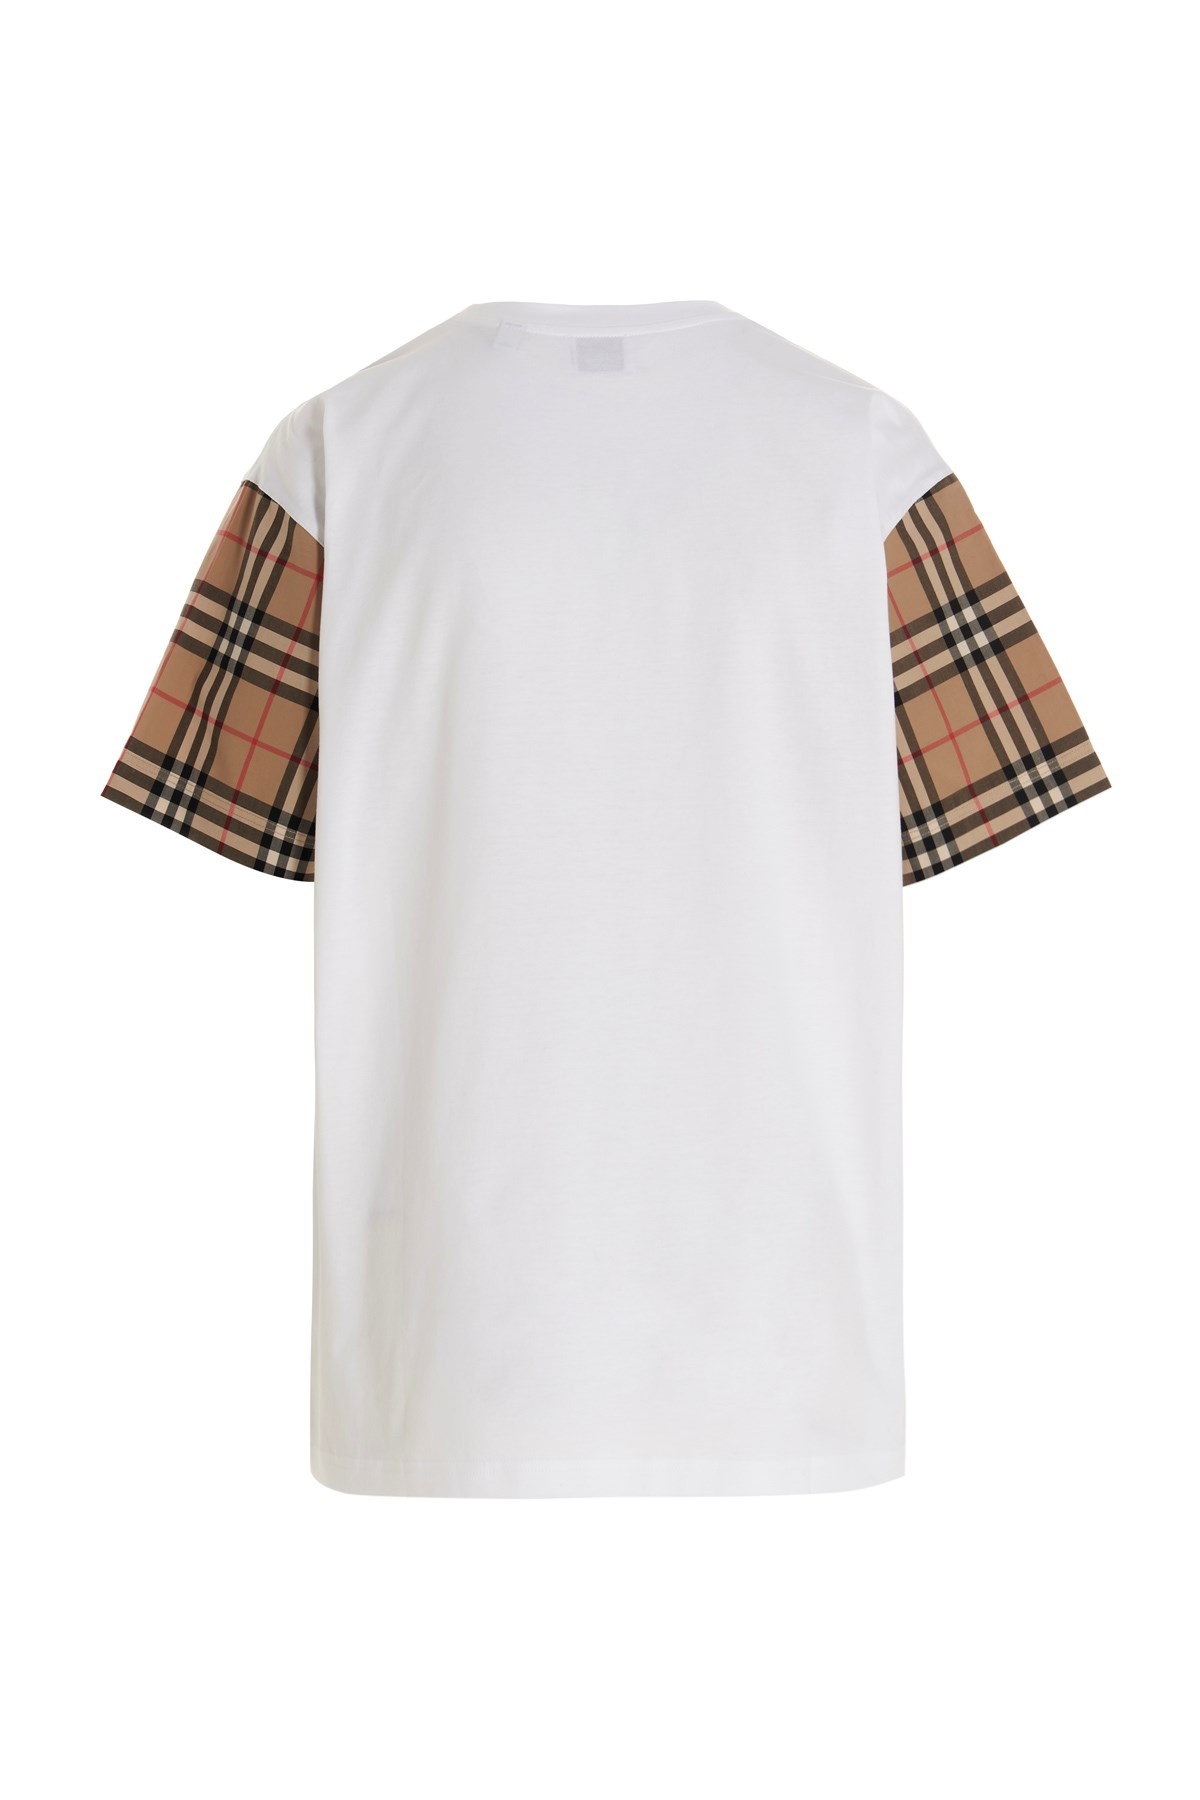 'Carrick' t-shirt - 2